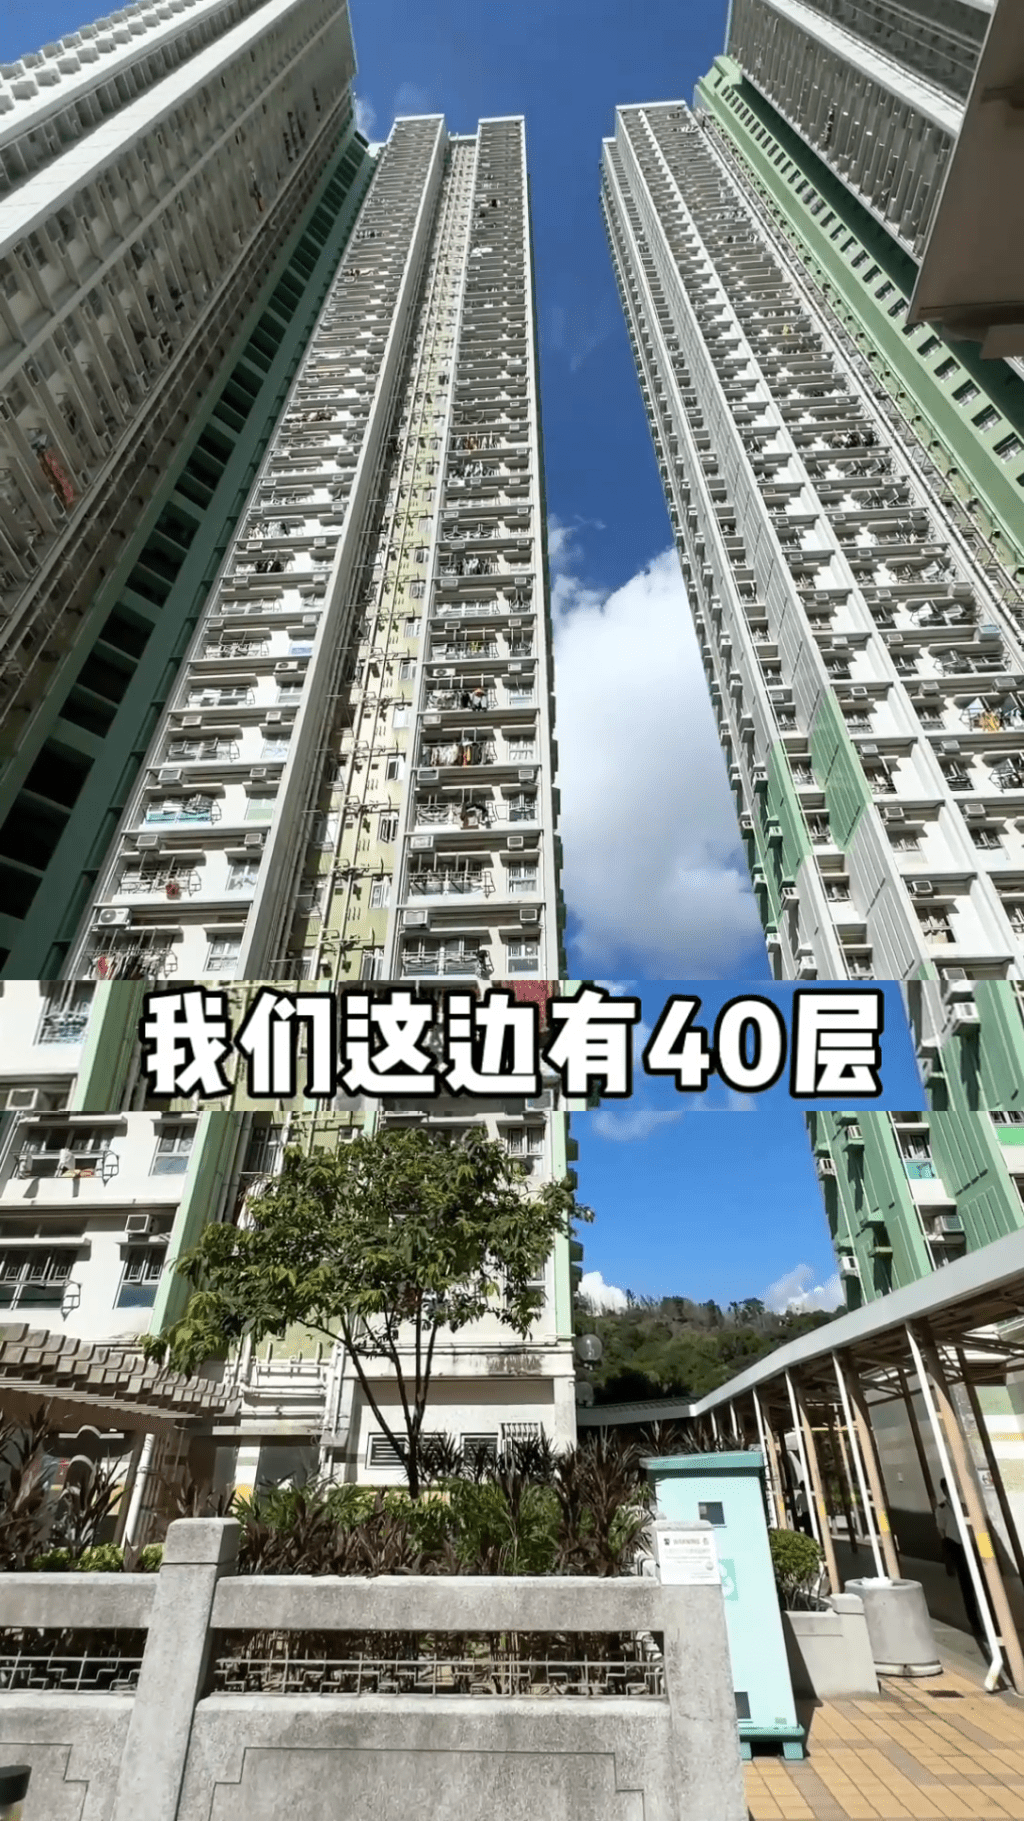 港妈介绍她们住的楼宇有40层。